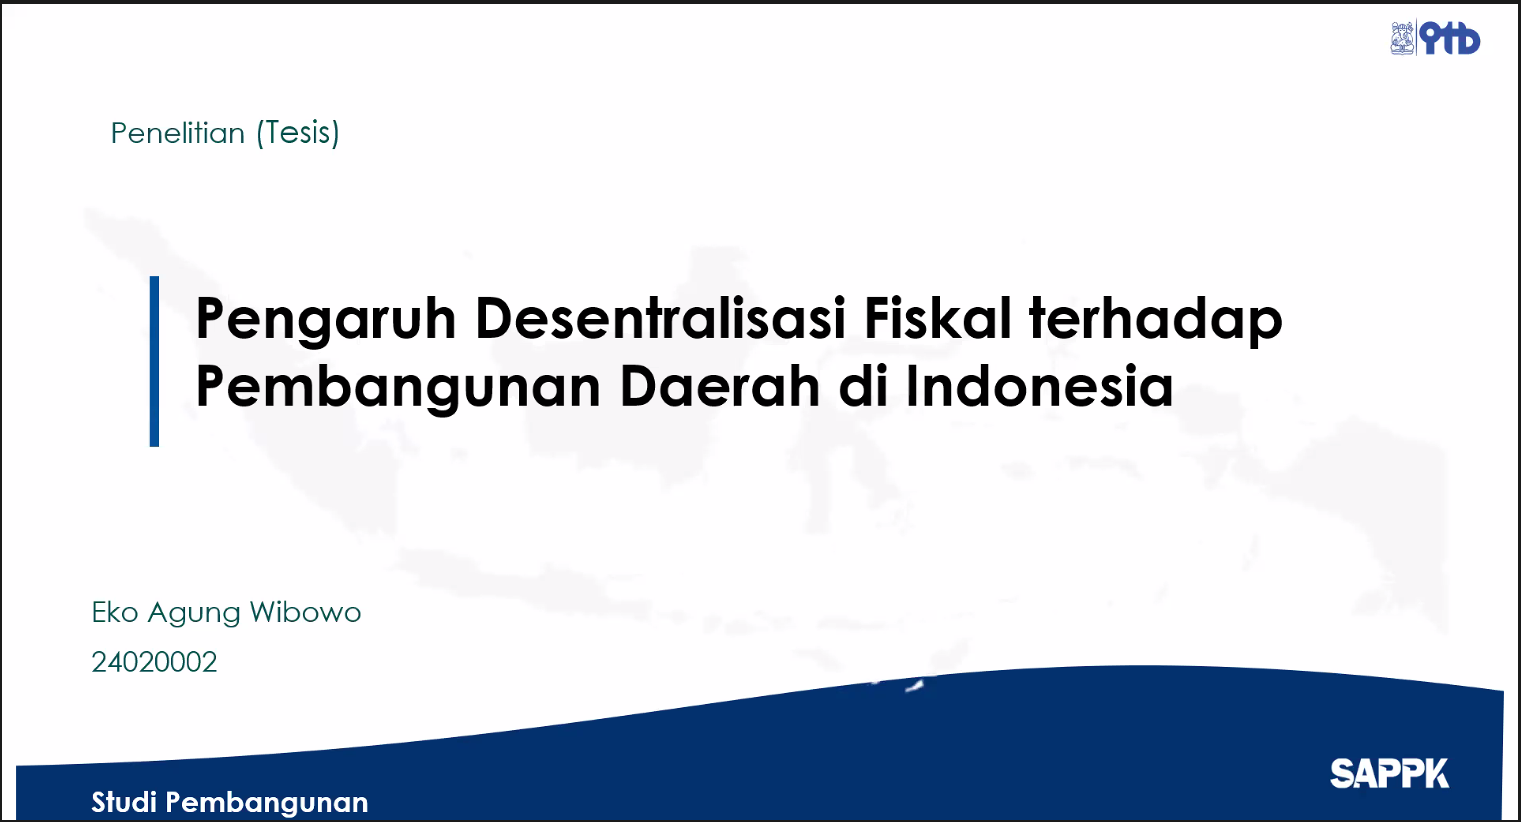 Sidang Tesis: “Pengaruh Desentralisasi Fiskal terhadap Pembangunan Daerah di Indonesia”